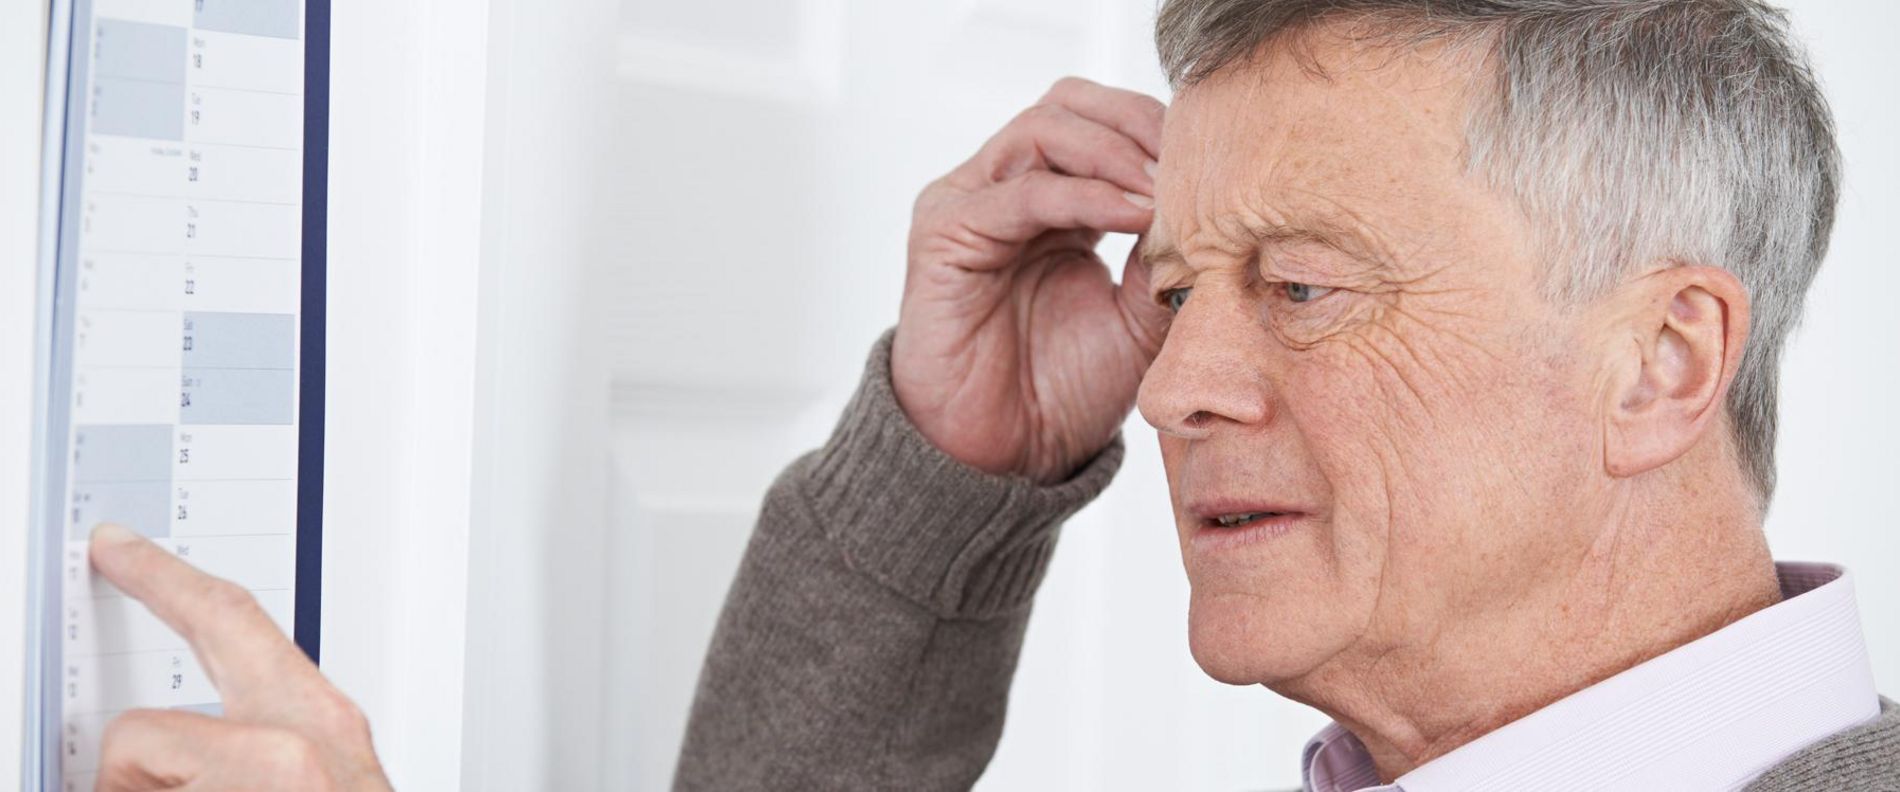 Älterer Mann versucht sich zu erinnern, Symbolbild Demenz